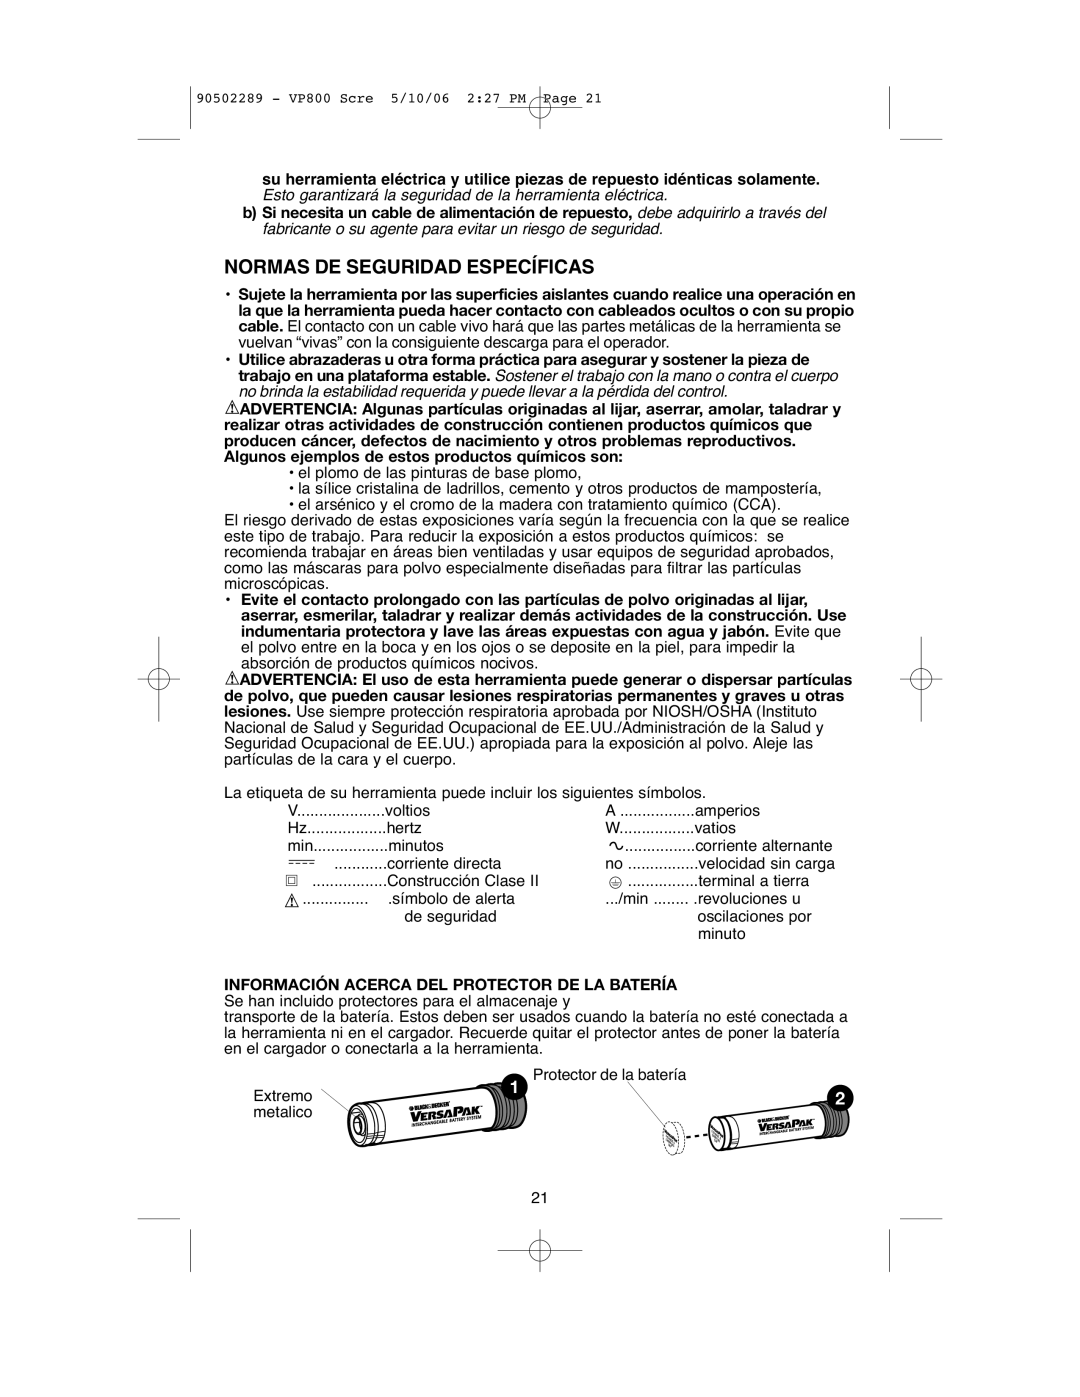 Black & Decker VP800 instruction manual Normas De Seguridad Específicas, Extremo, metalico 